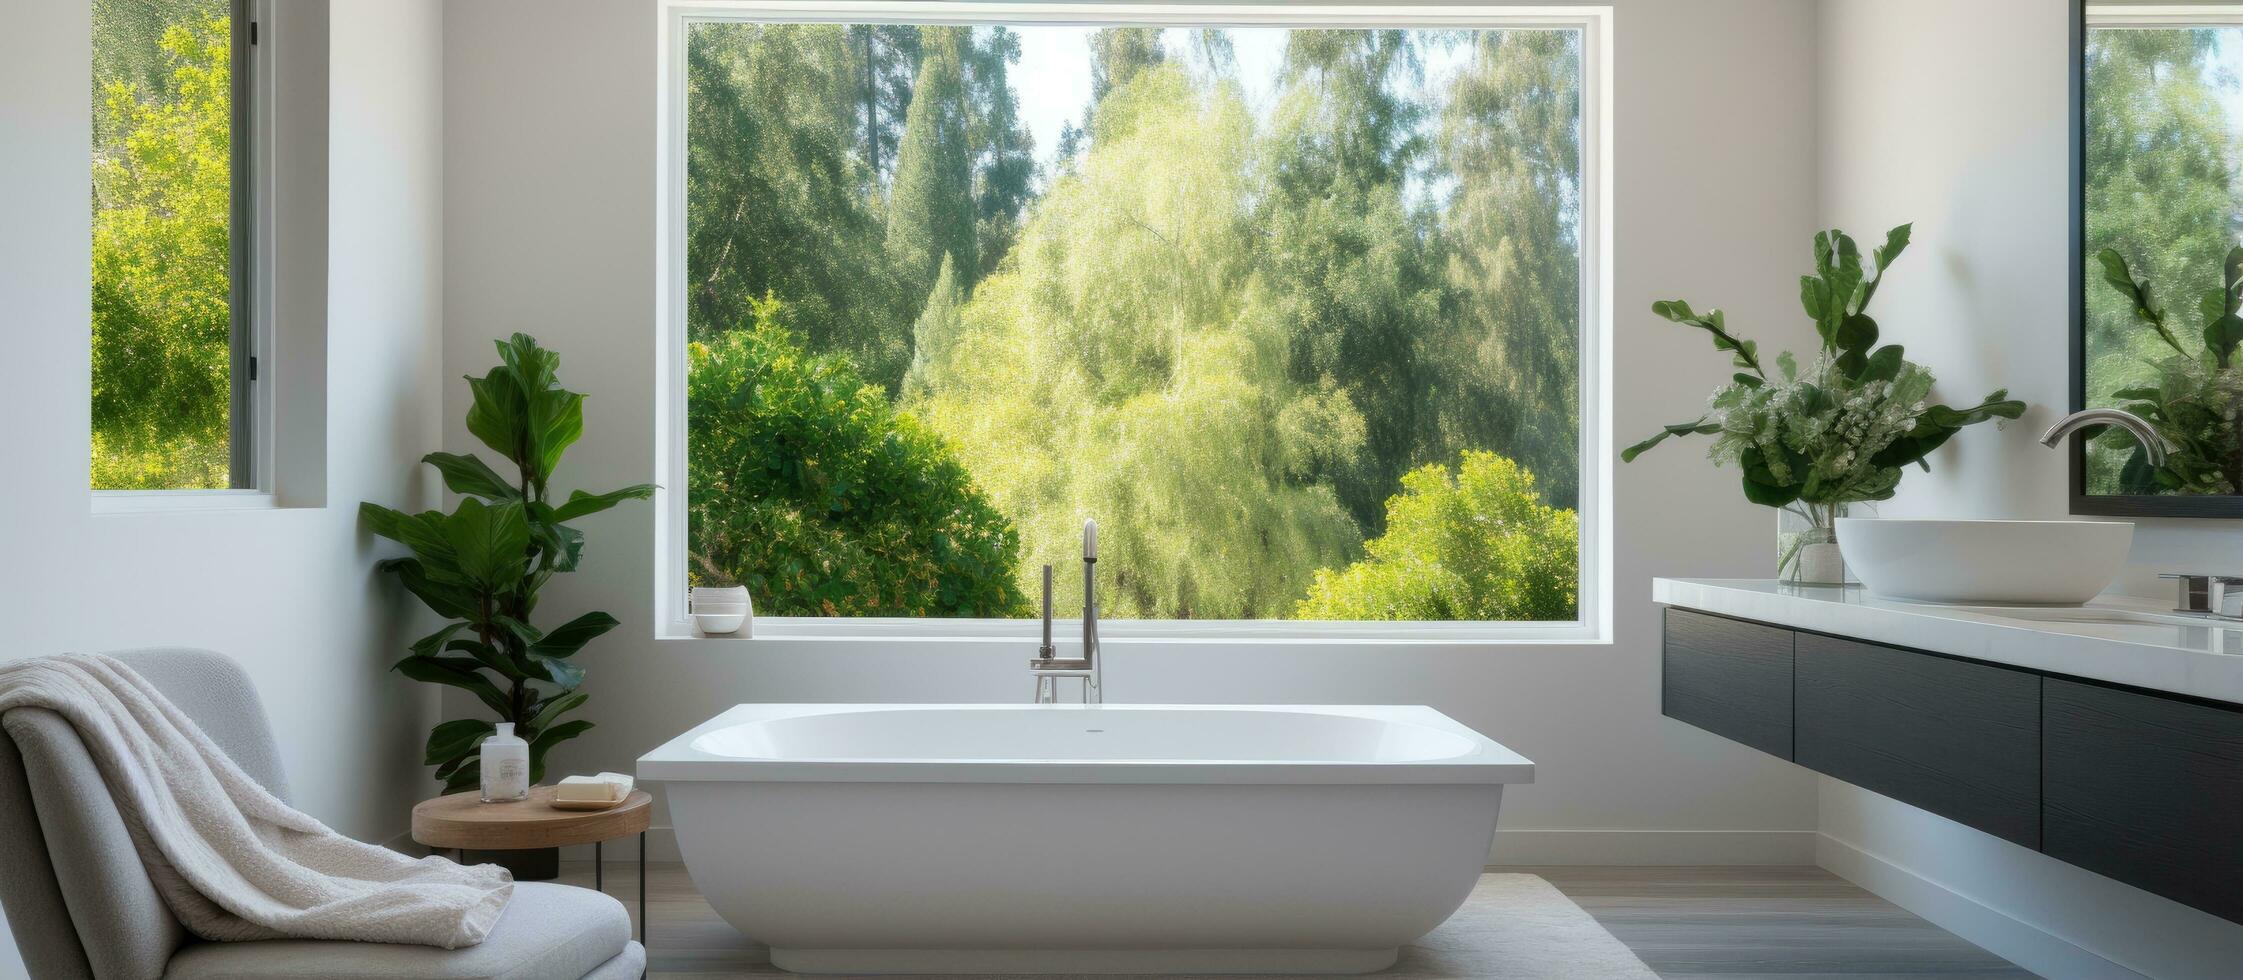 luxuriös Zuhause mit Meister Badezimmer mit Badewanne Fenster Aussicht von Schlafzimmer und Baum gefüllt Gegend foto